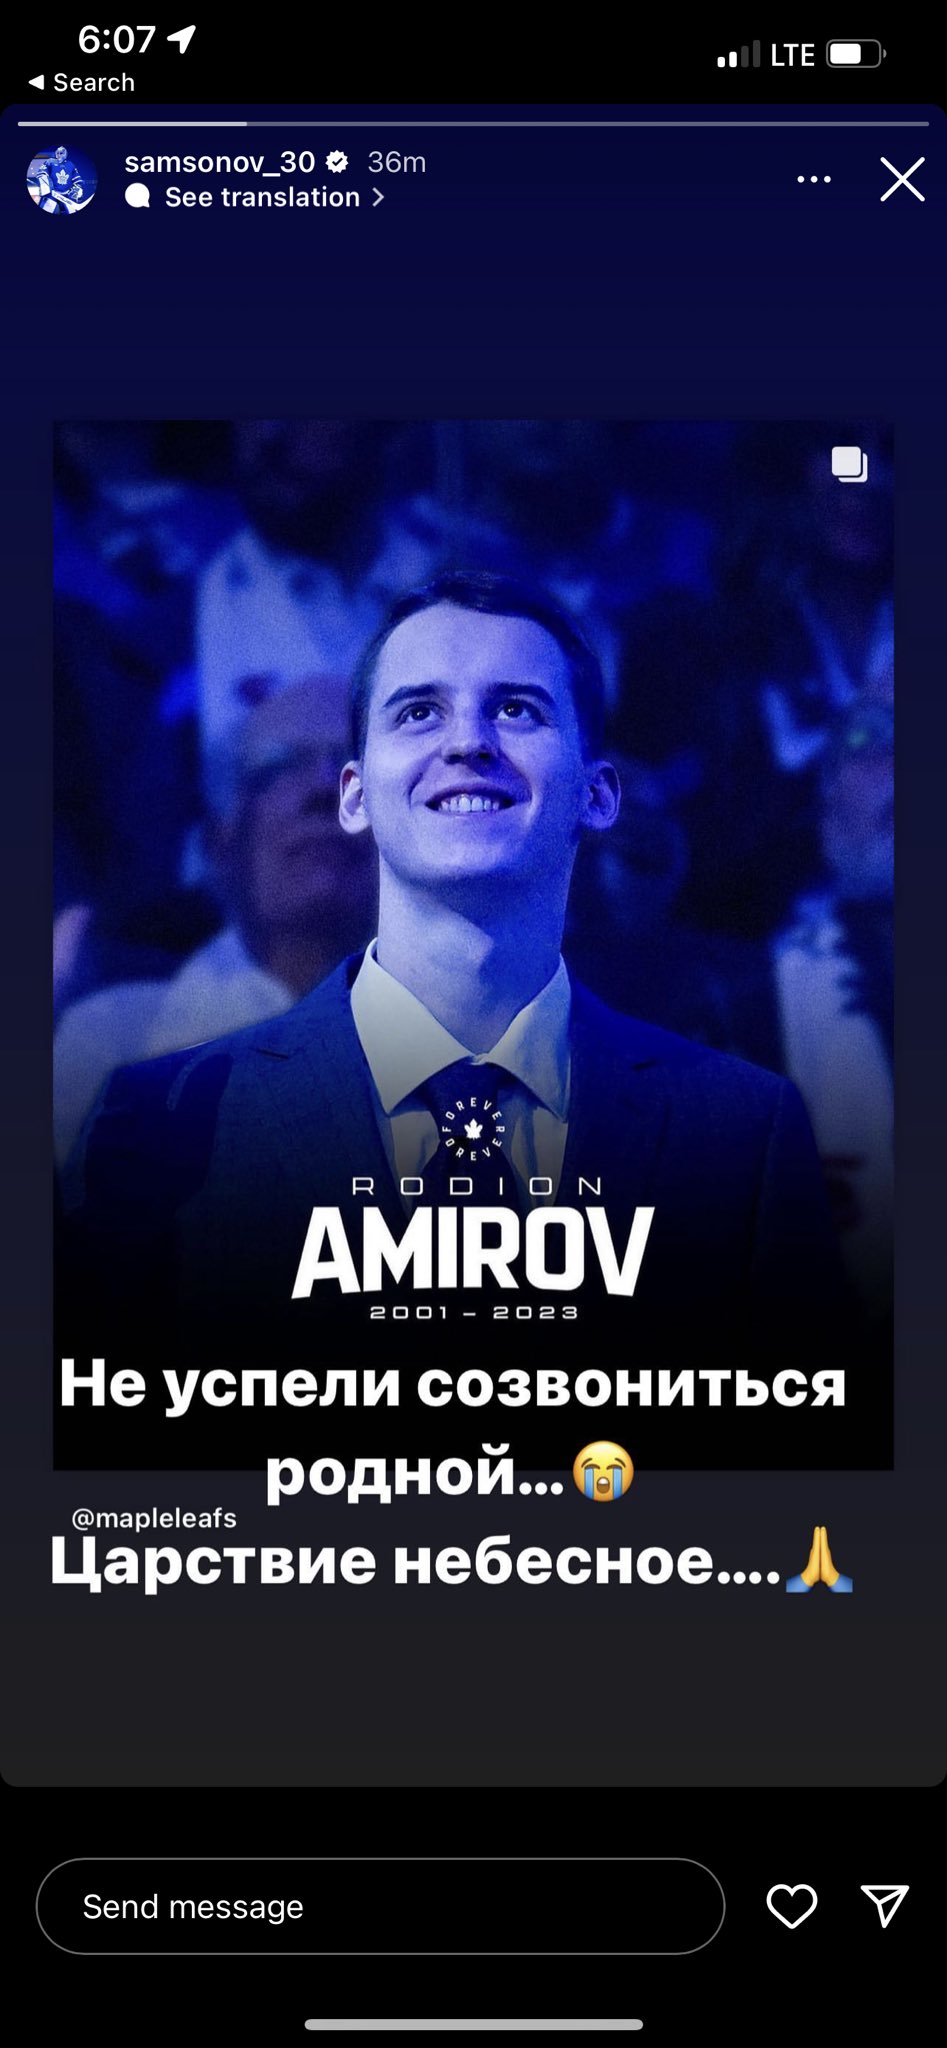 NHL on Instagram: Ilya Samsonov's (@samsonov_30) new mask design